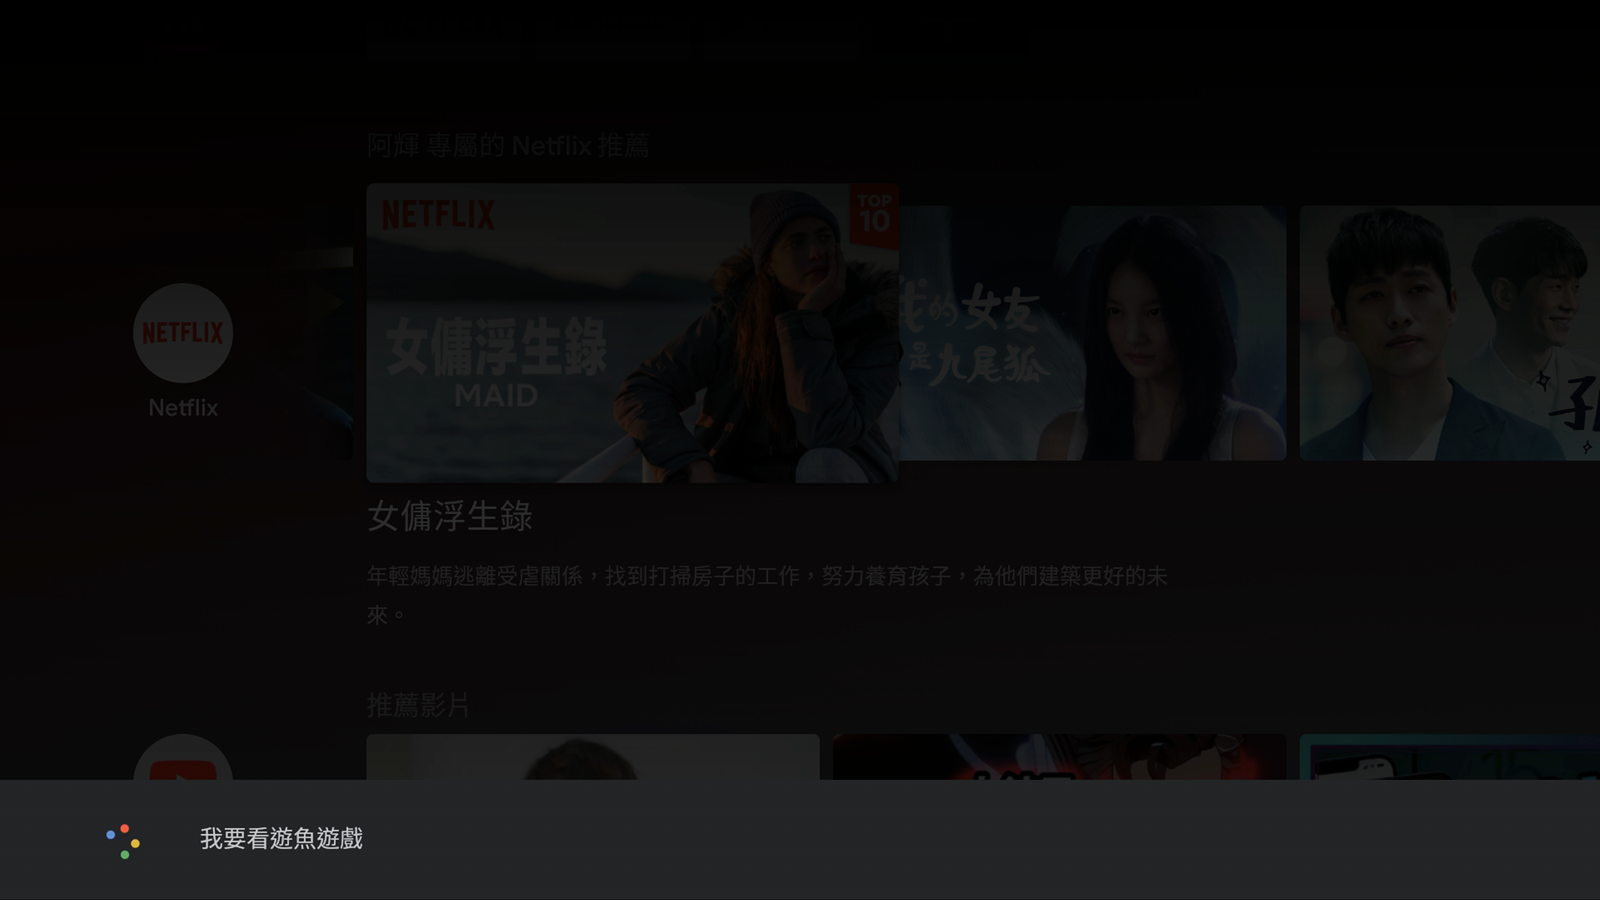 美型便攜 4K HDR 電視盒！內建官方正版 Netflix 還有語音助理的 Dynalink Android TV Box！ @3C 達人廖阿輝